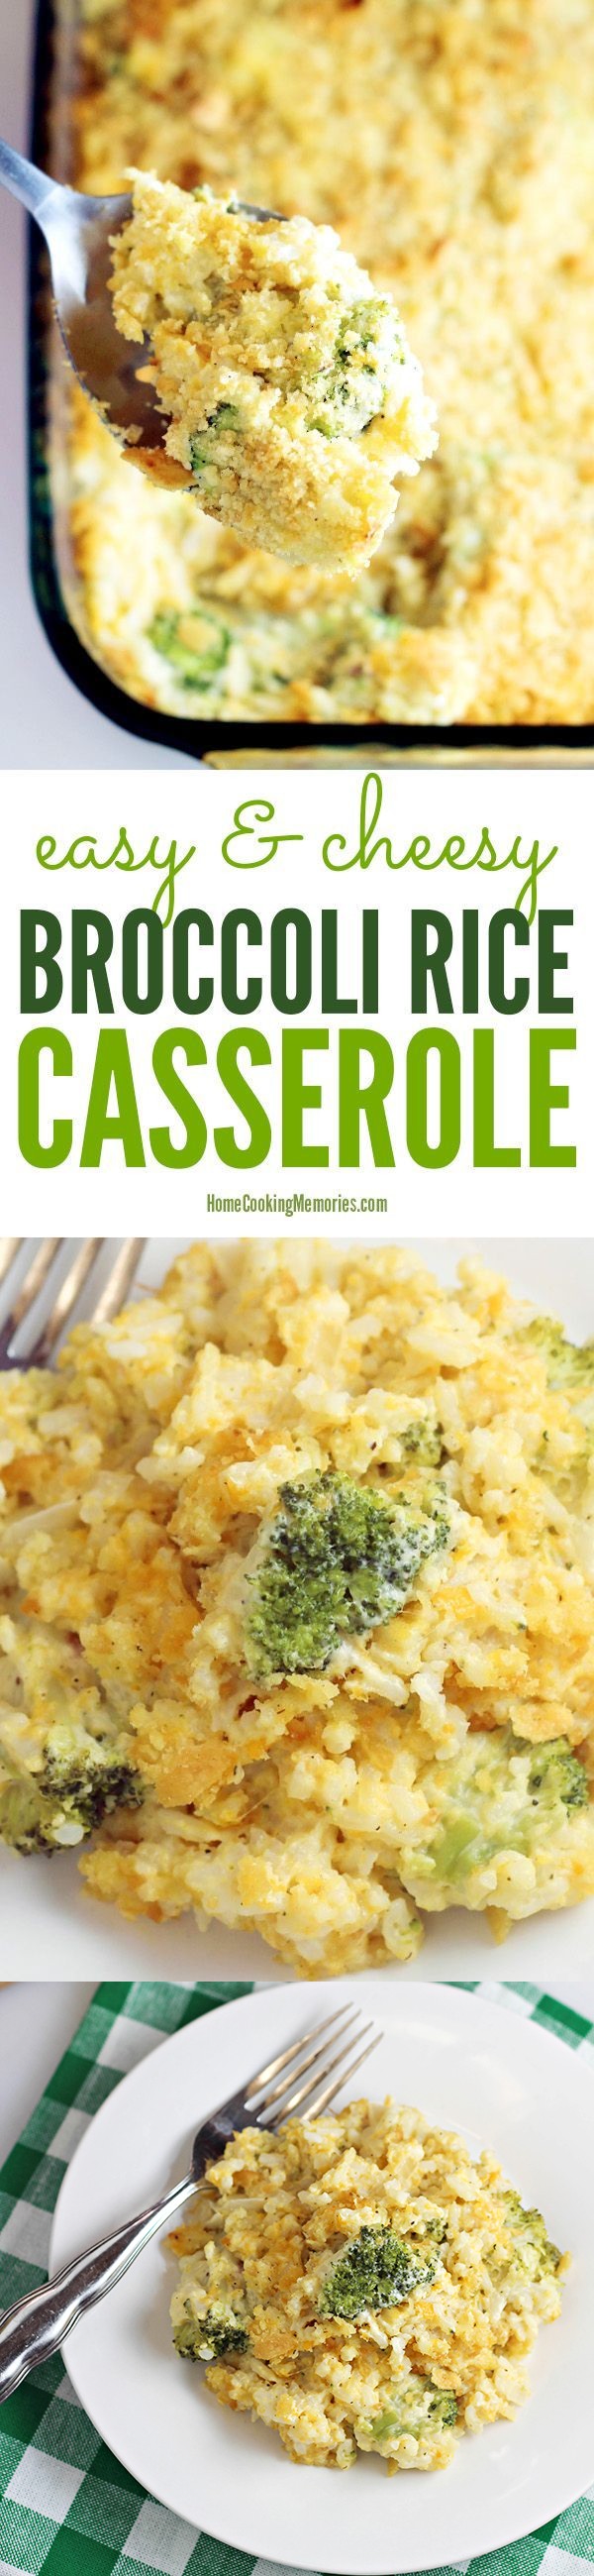 Easy Broccoli Rice Casserole